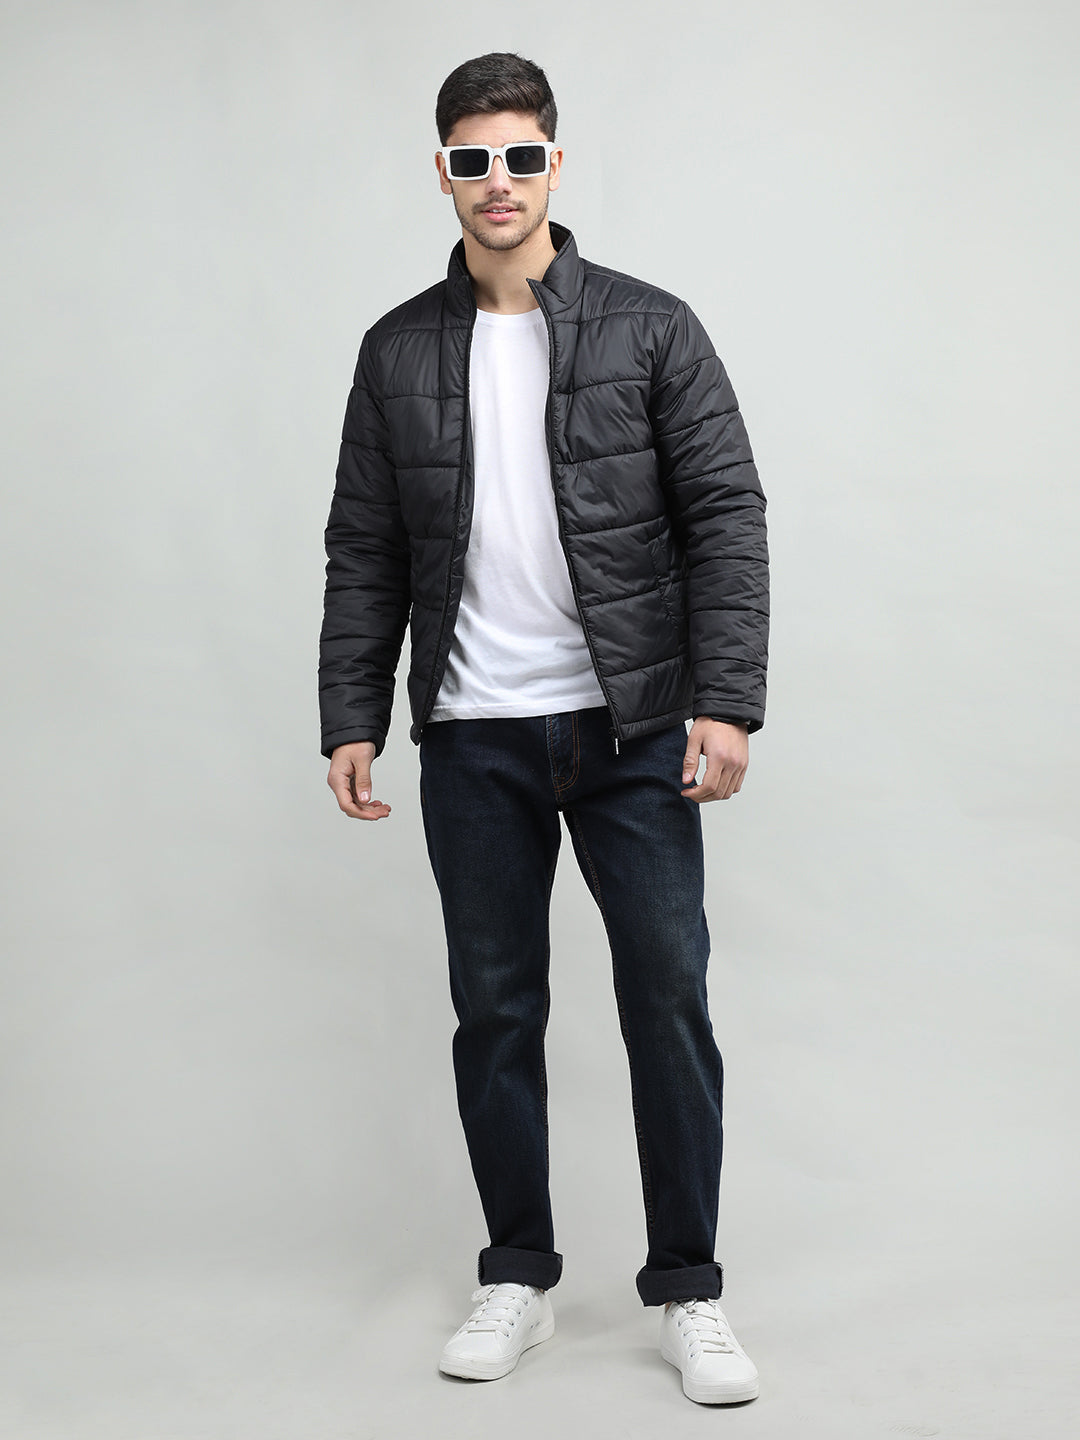 Men's winter wear Jackets | CHKOKKO